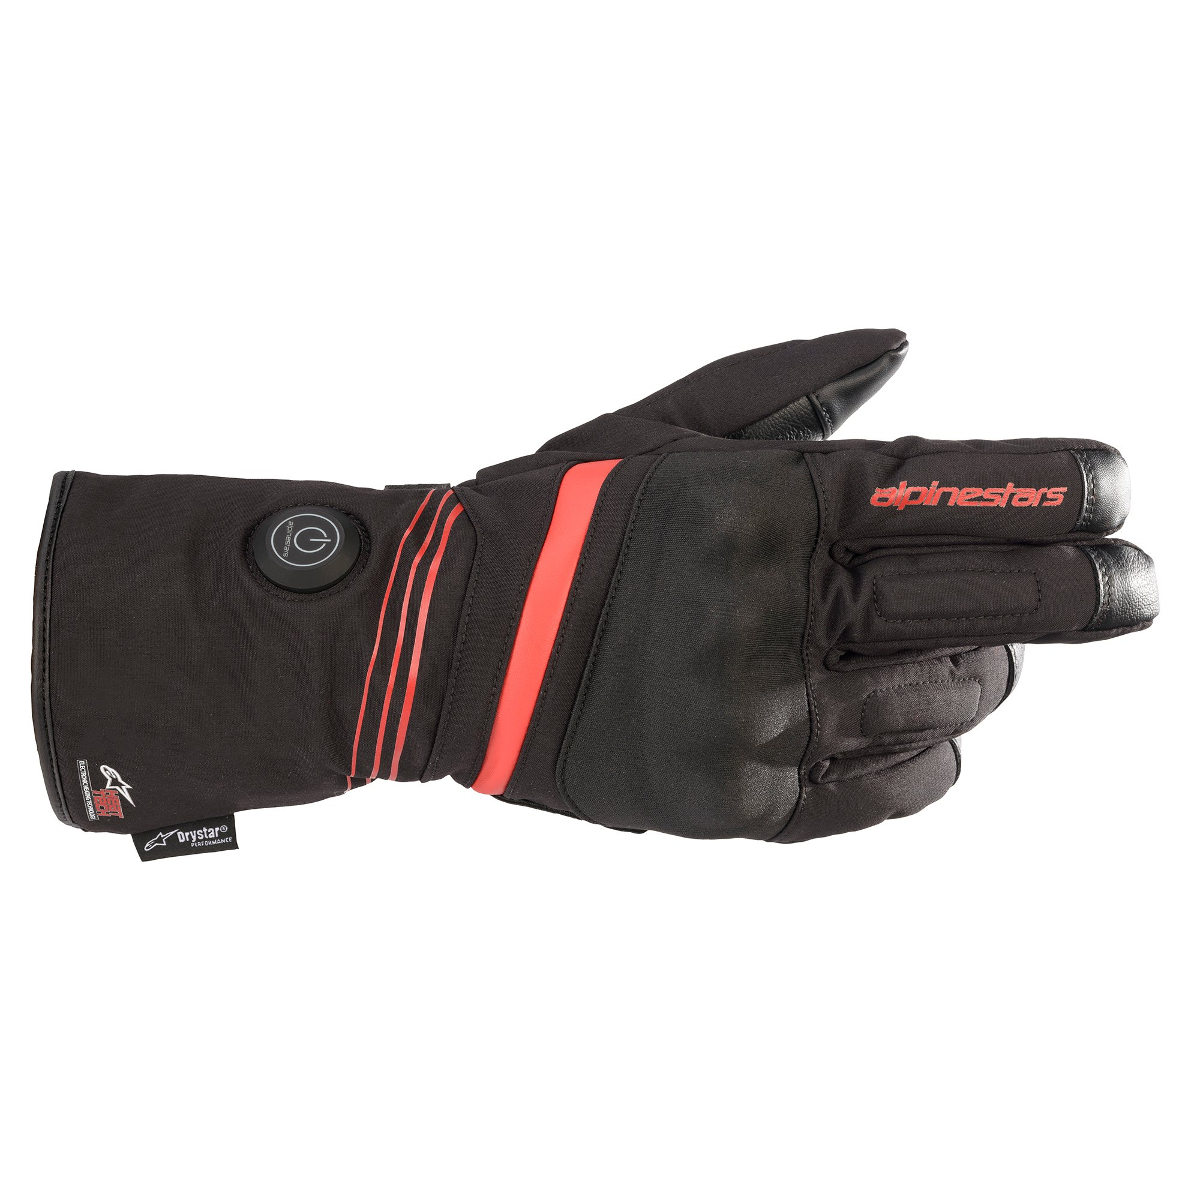 https://imageflow.rad.eu/1/7O8RyiQEclM60jZ4aqUXPp1V1/gants-chauffants-alpinestars-ht-5-heat-tech-drystar-gloves-noir.jpg